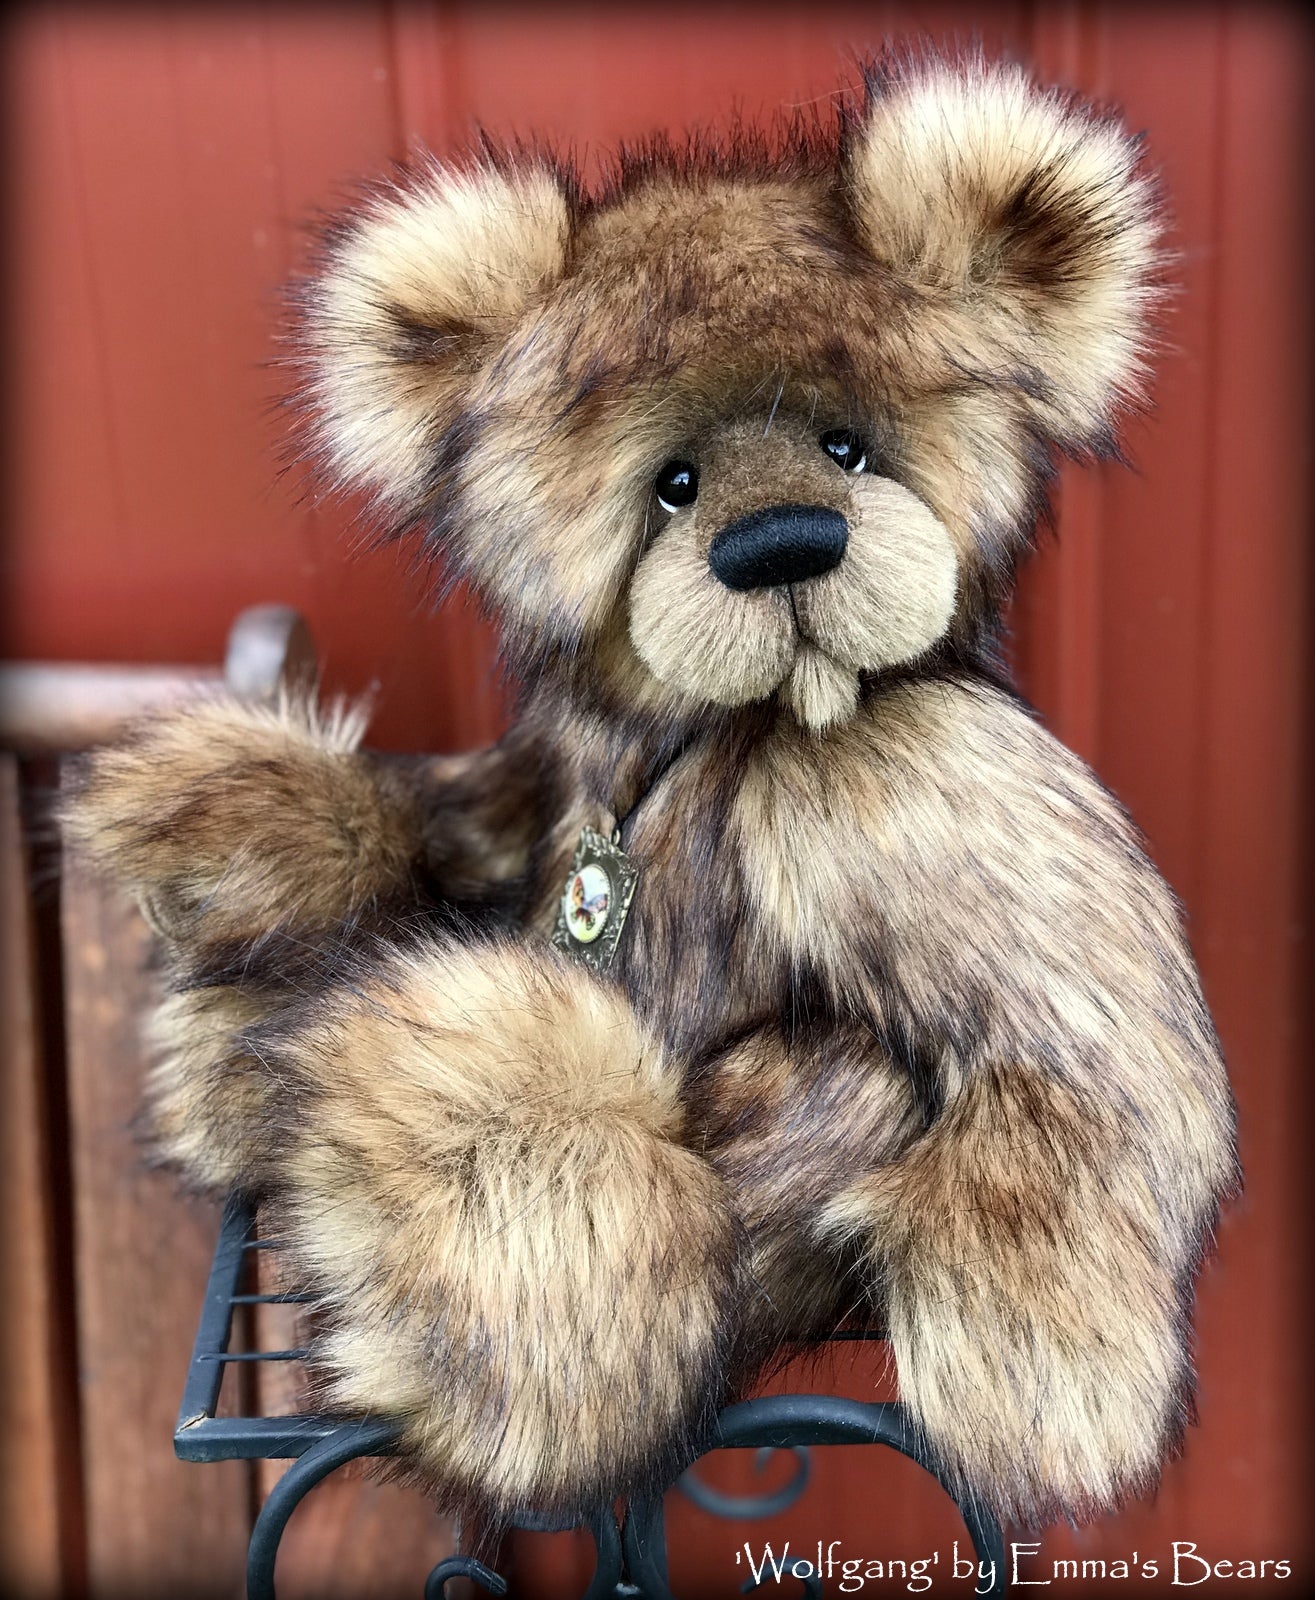 Wolfgang - 15" Faux Fur Artist Bear by Emmas Bears - OOAK